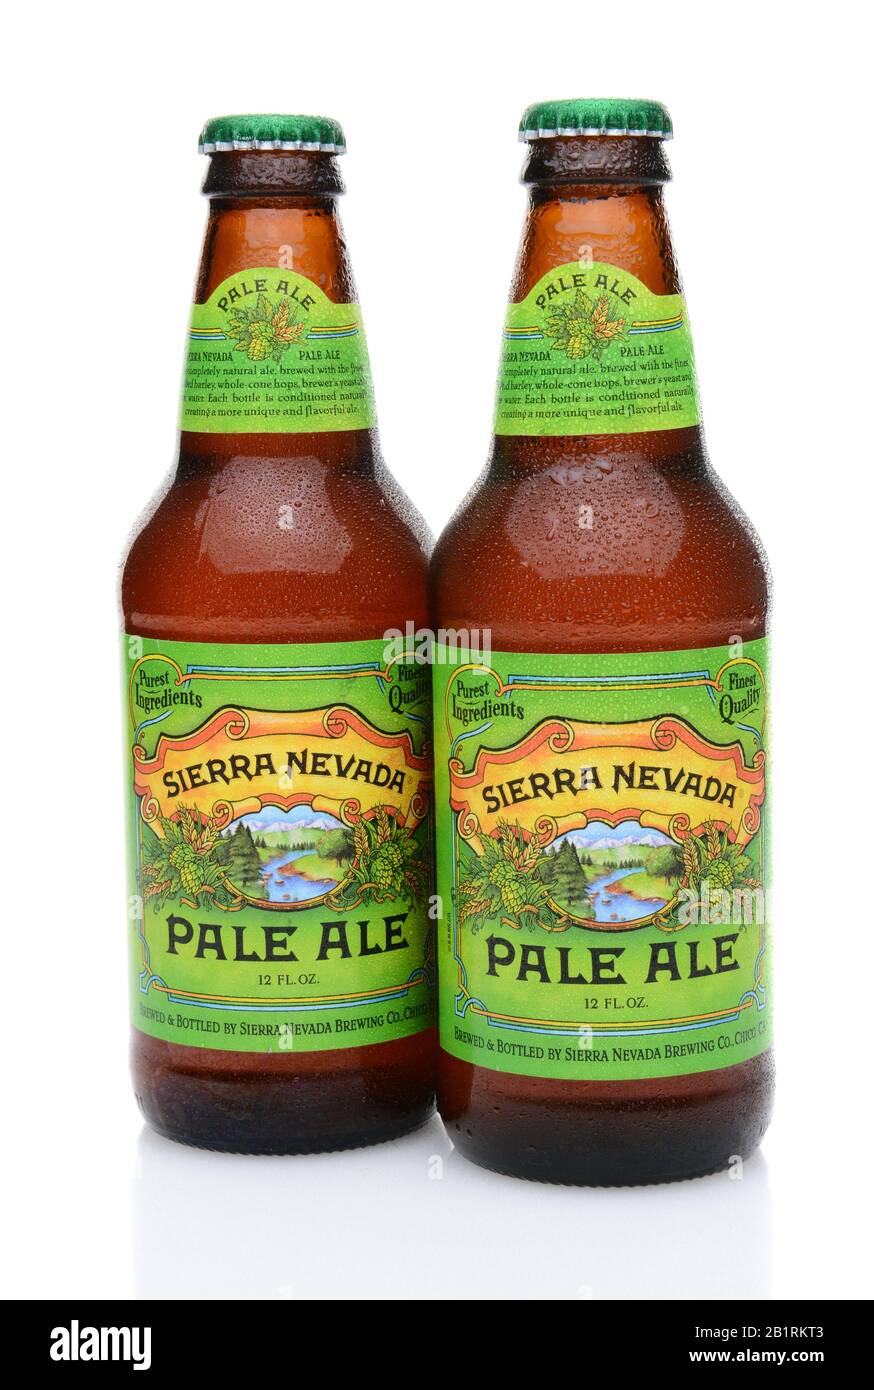 Irvine, CA - 25 MAI 2014 : deux bouteilles de Sierra Nevada Pale Ale. La Sierra Nevada Brewing Co. A été créée en 1980 par des homebrasseurs à Chico, Californie Banque D'Images